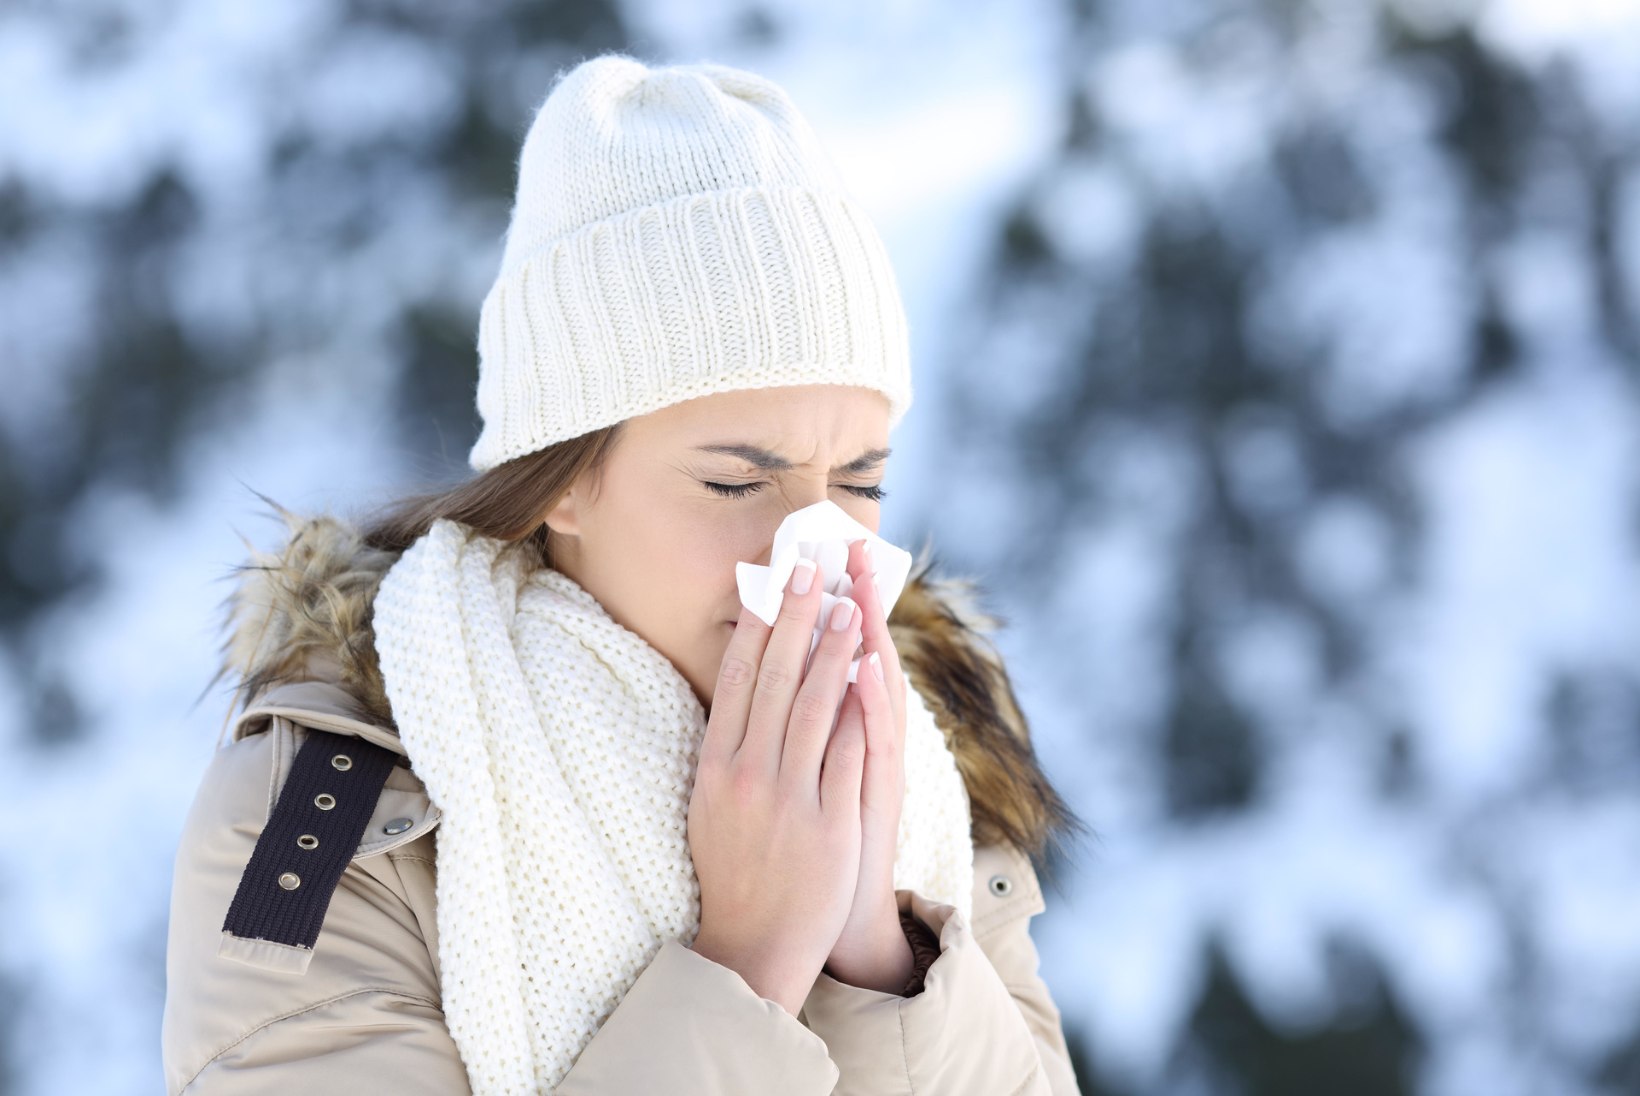 ÄRA LEVITA VIIRUST! Kui põed grippi, hoia tervetest vähemalt meeter eemale